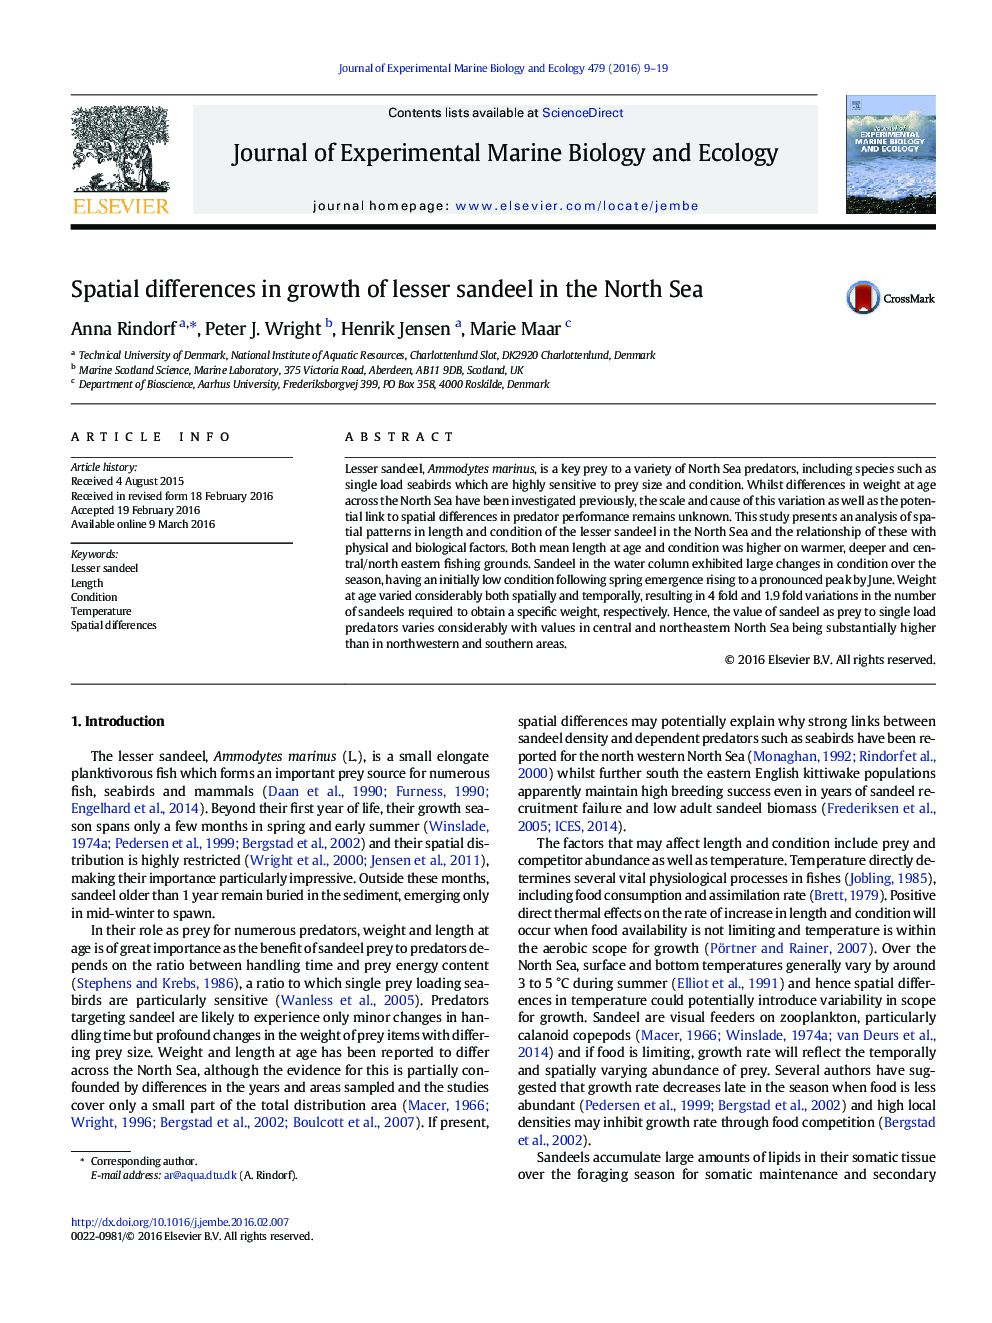 تفاوت های فضایی در رشد تاندون های کوچک در دریای شمال 